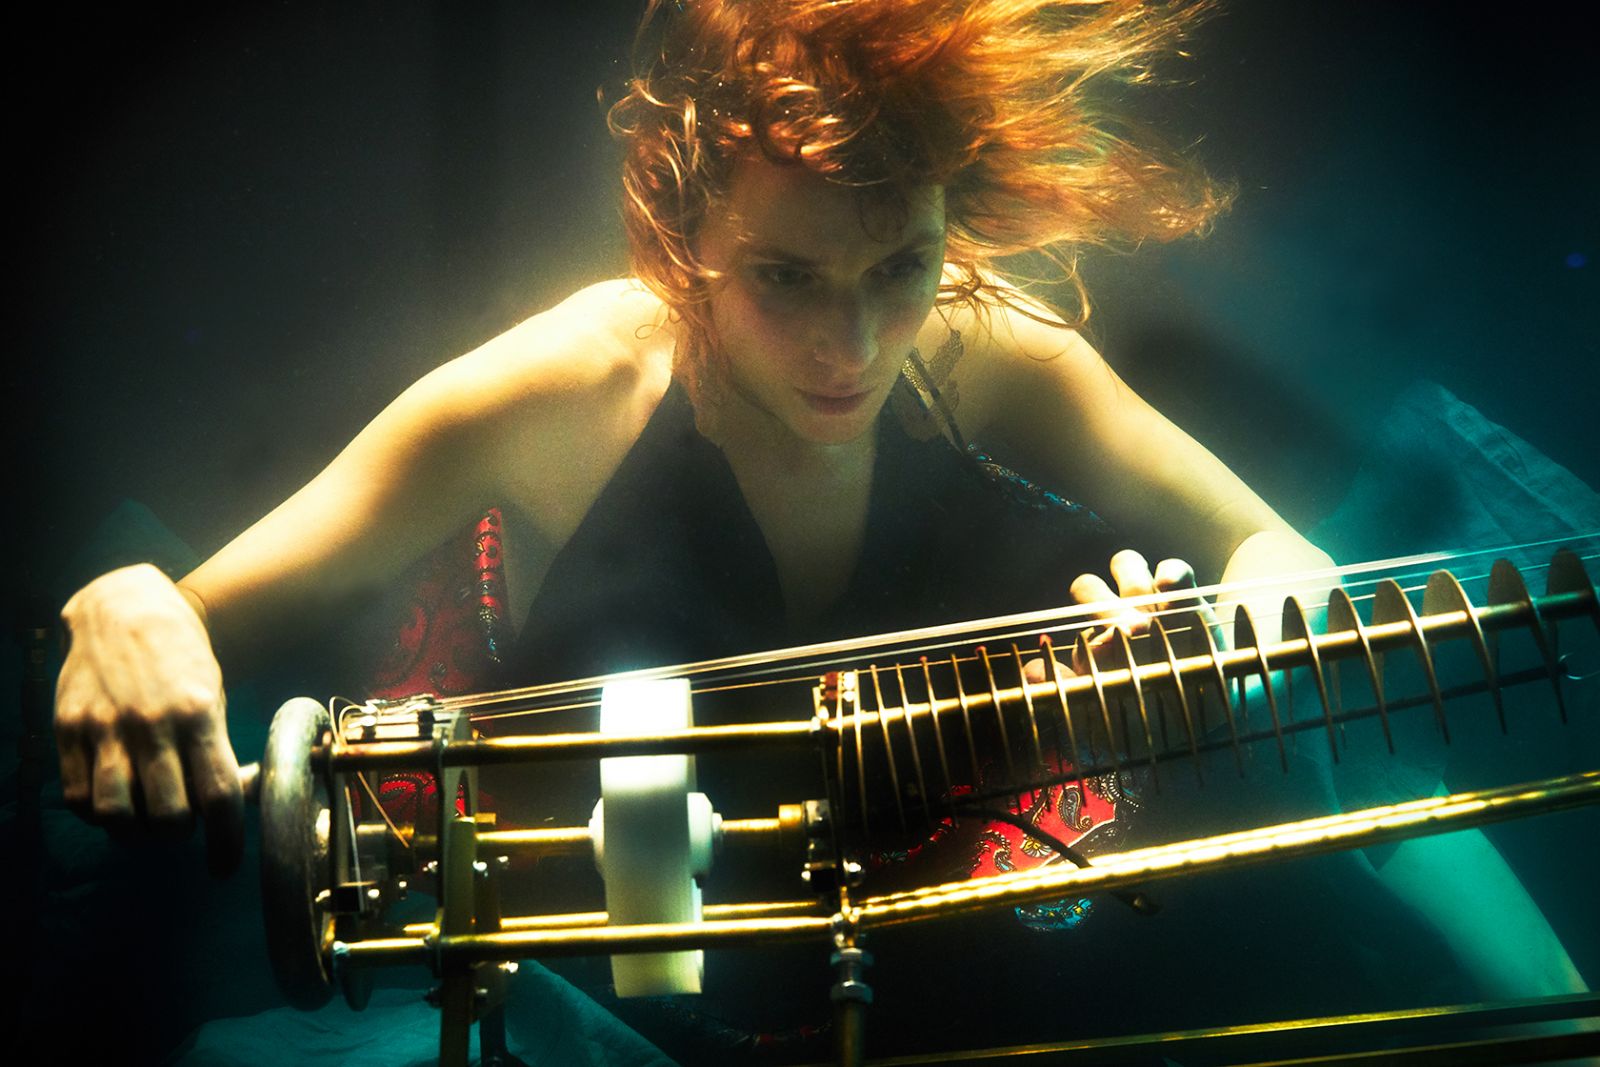 AquaSonic er en kompromisløs opdagelsesrejse under vand</br>AquaSonic koncert. Der spilles på undervandsinstrumentet rotacorda.</br>Foto: Ambra Vernuccio